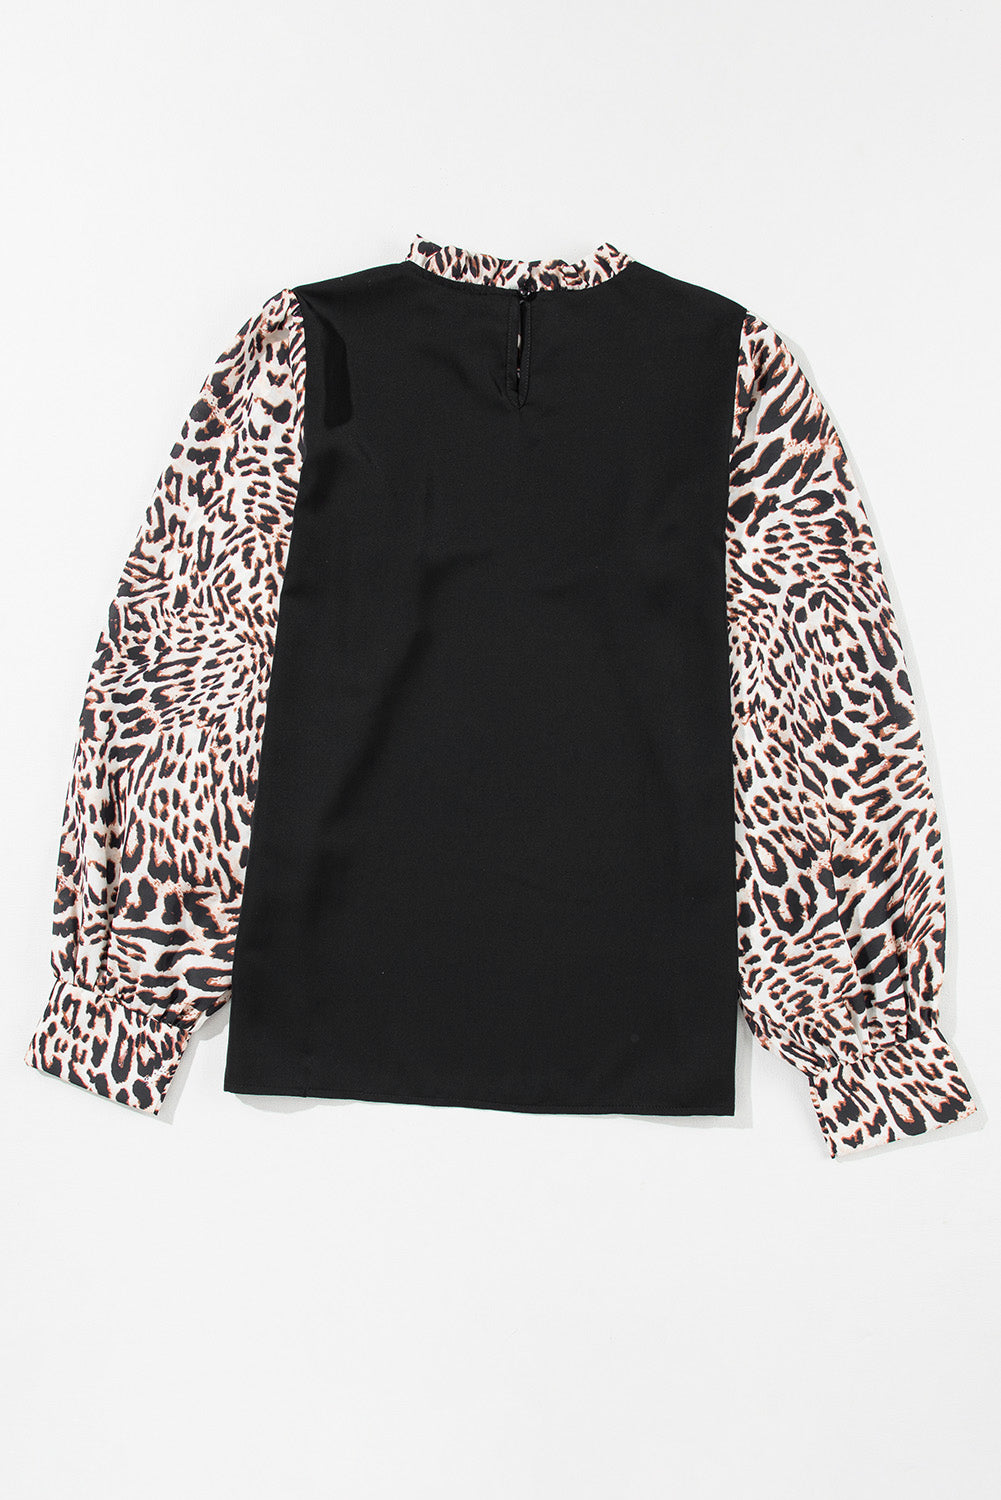 Crna bluza s lanternastim rukavima s uzorkom leoparda